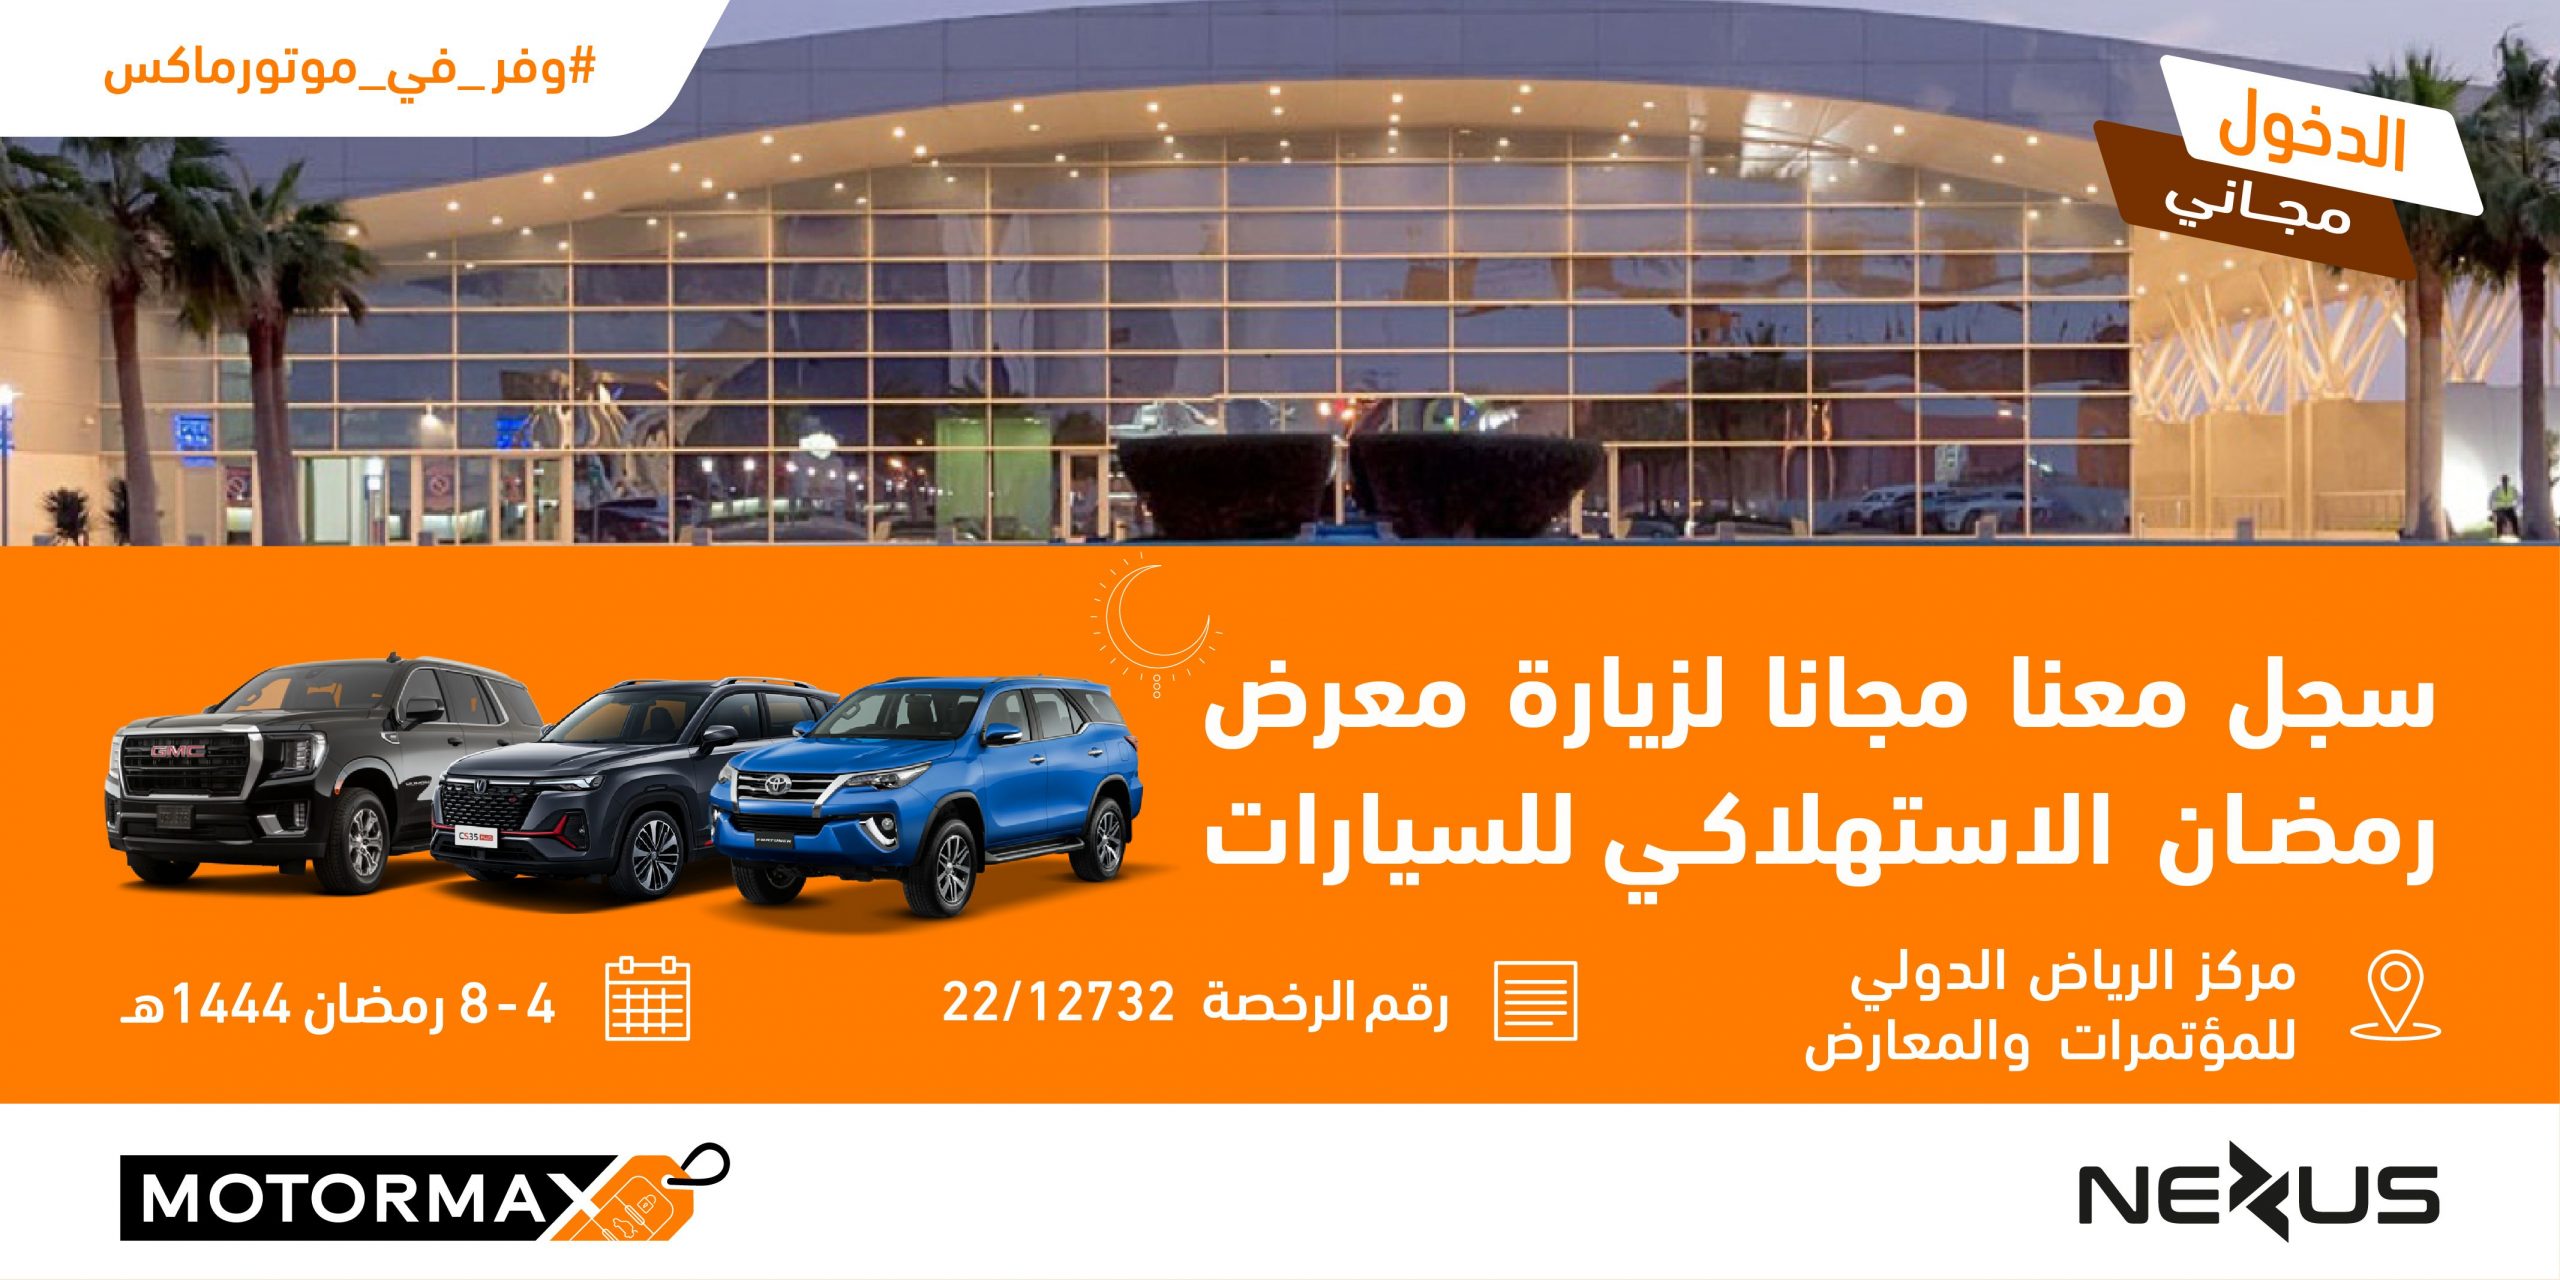 معرض رمضان الاستهلاكي للسيارات "موتورماكس" يستقبل زواره خلال شهر رمضان المبارك في مركز الرياض الدولي للمؤتمرات والمعارض 20